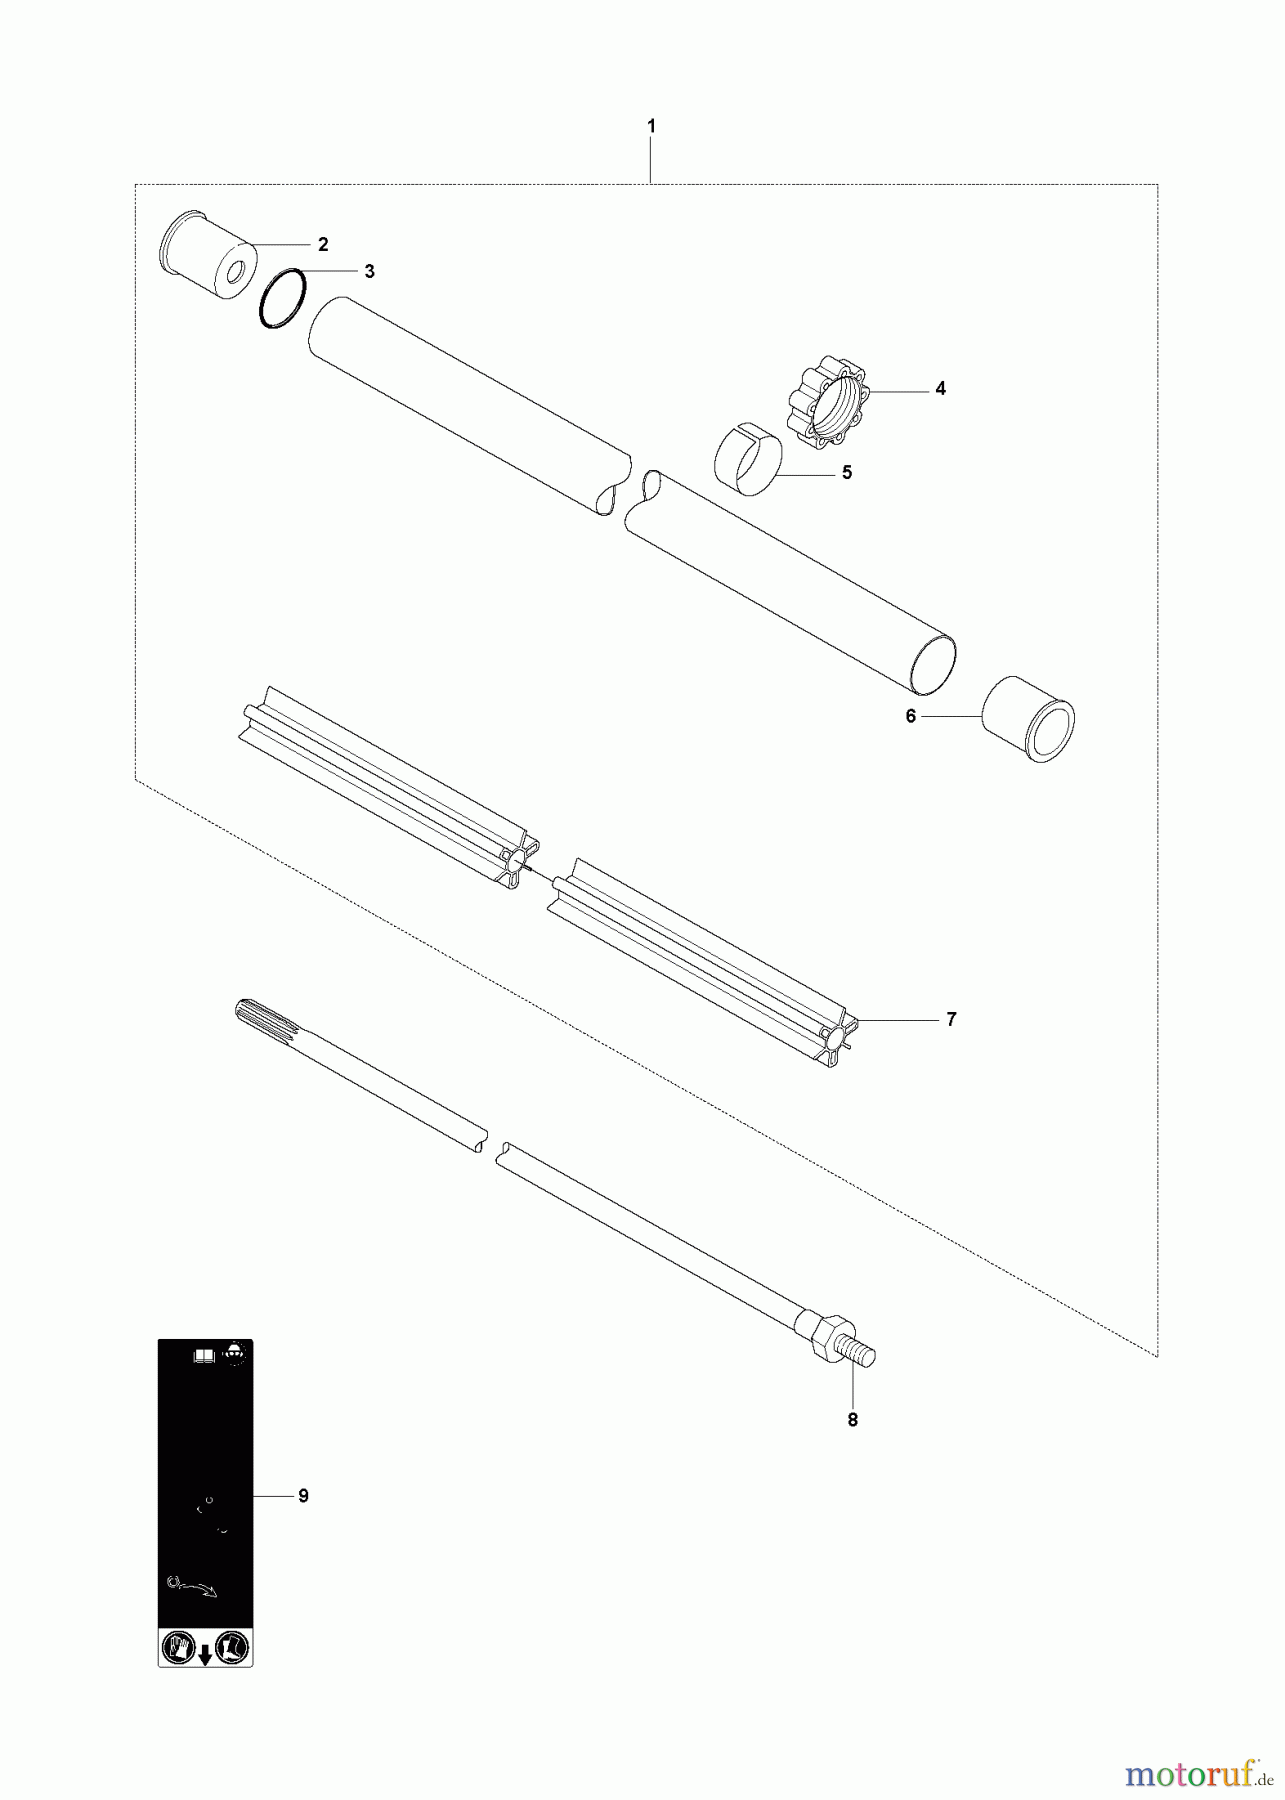  Jonsered Motorsensen, Trimmer CC2145 - Jonsered String/Brush Trimmer (2008-05) SHAFT